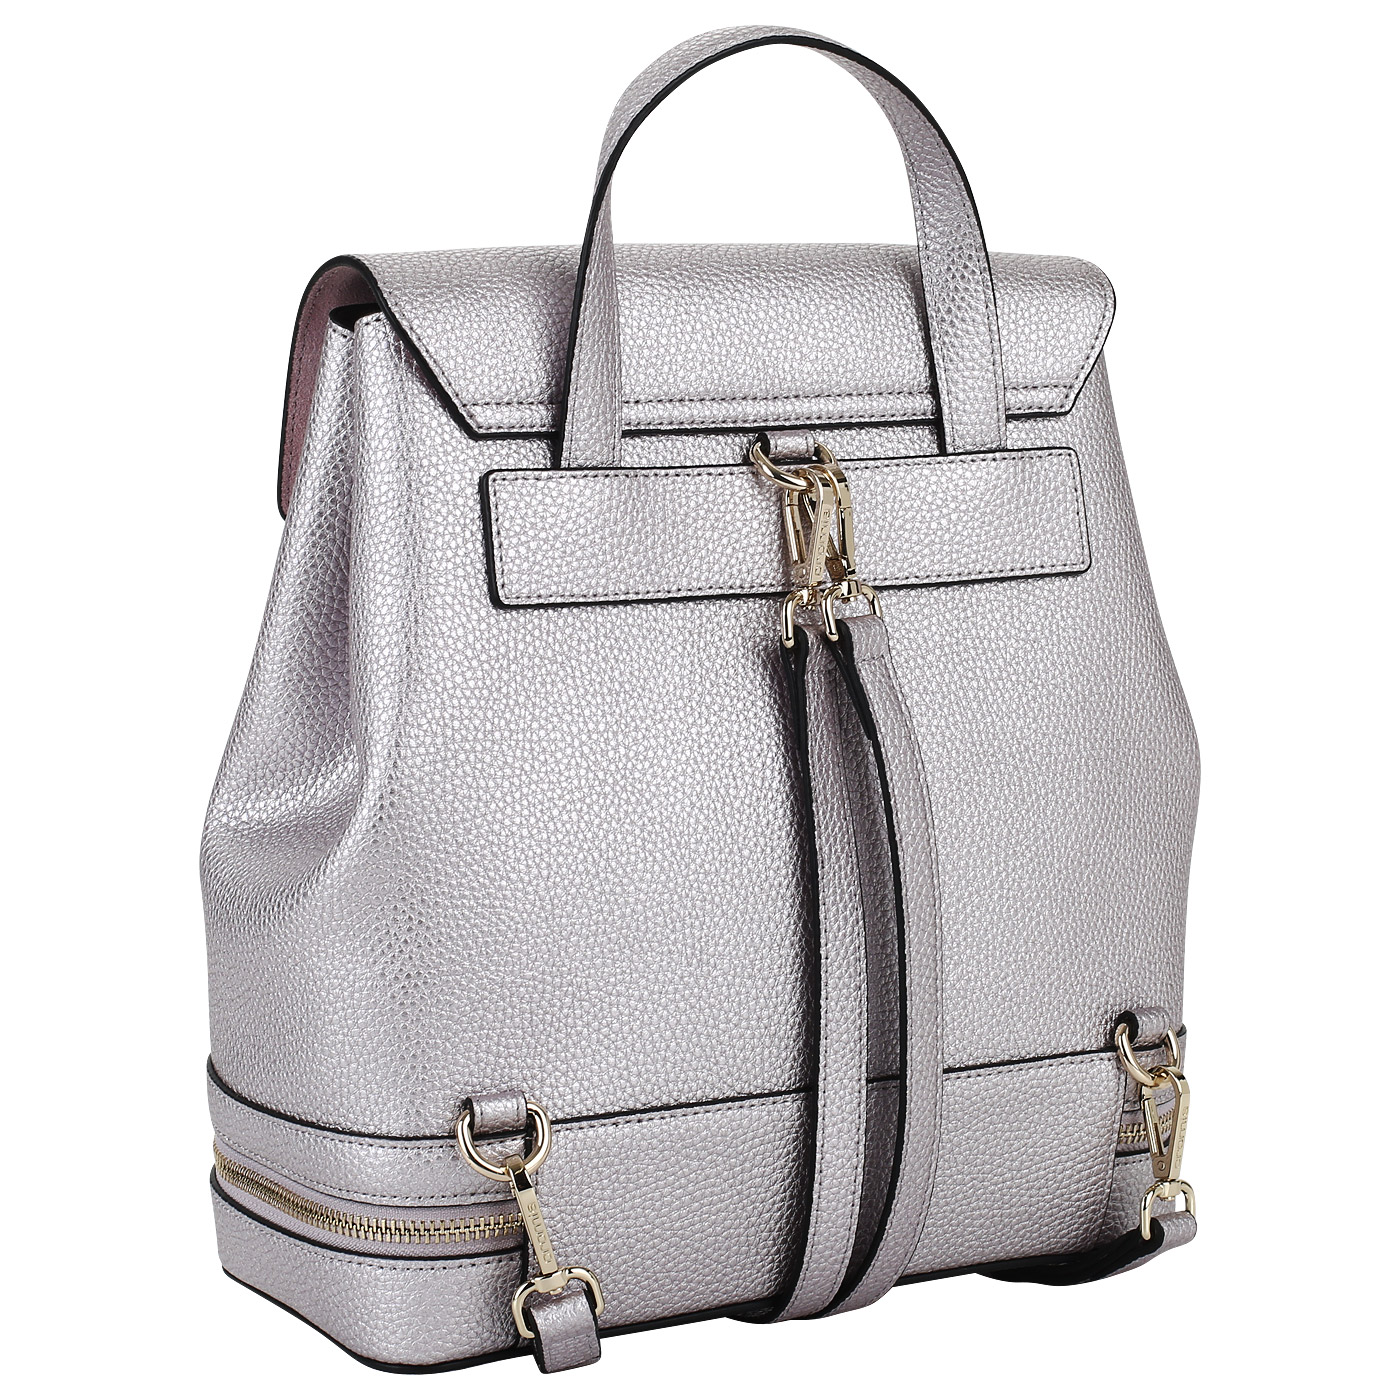 Кожаный рюкзак со съемными лямками Cromia Mina